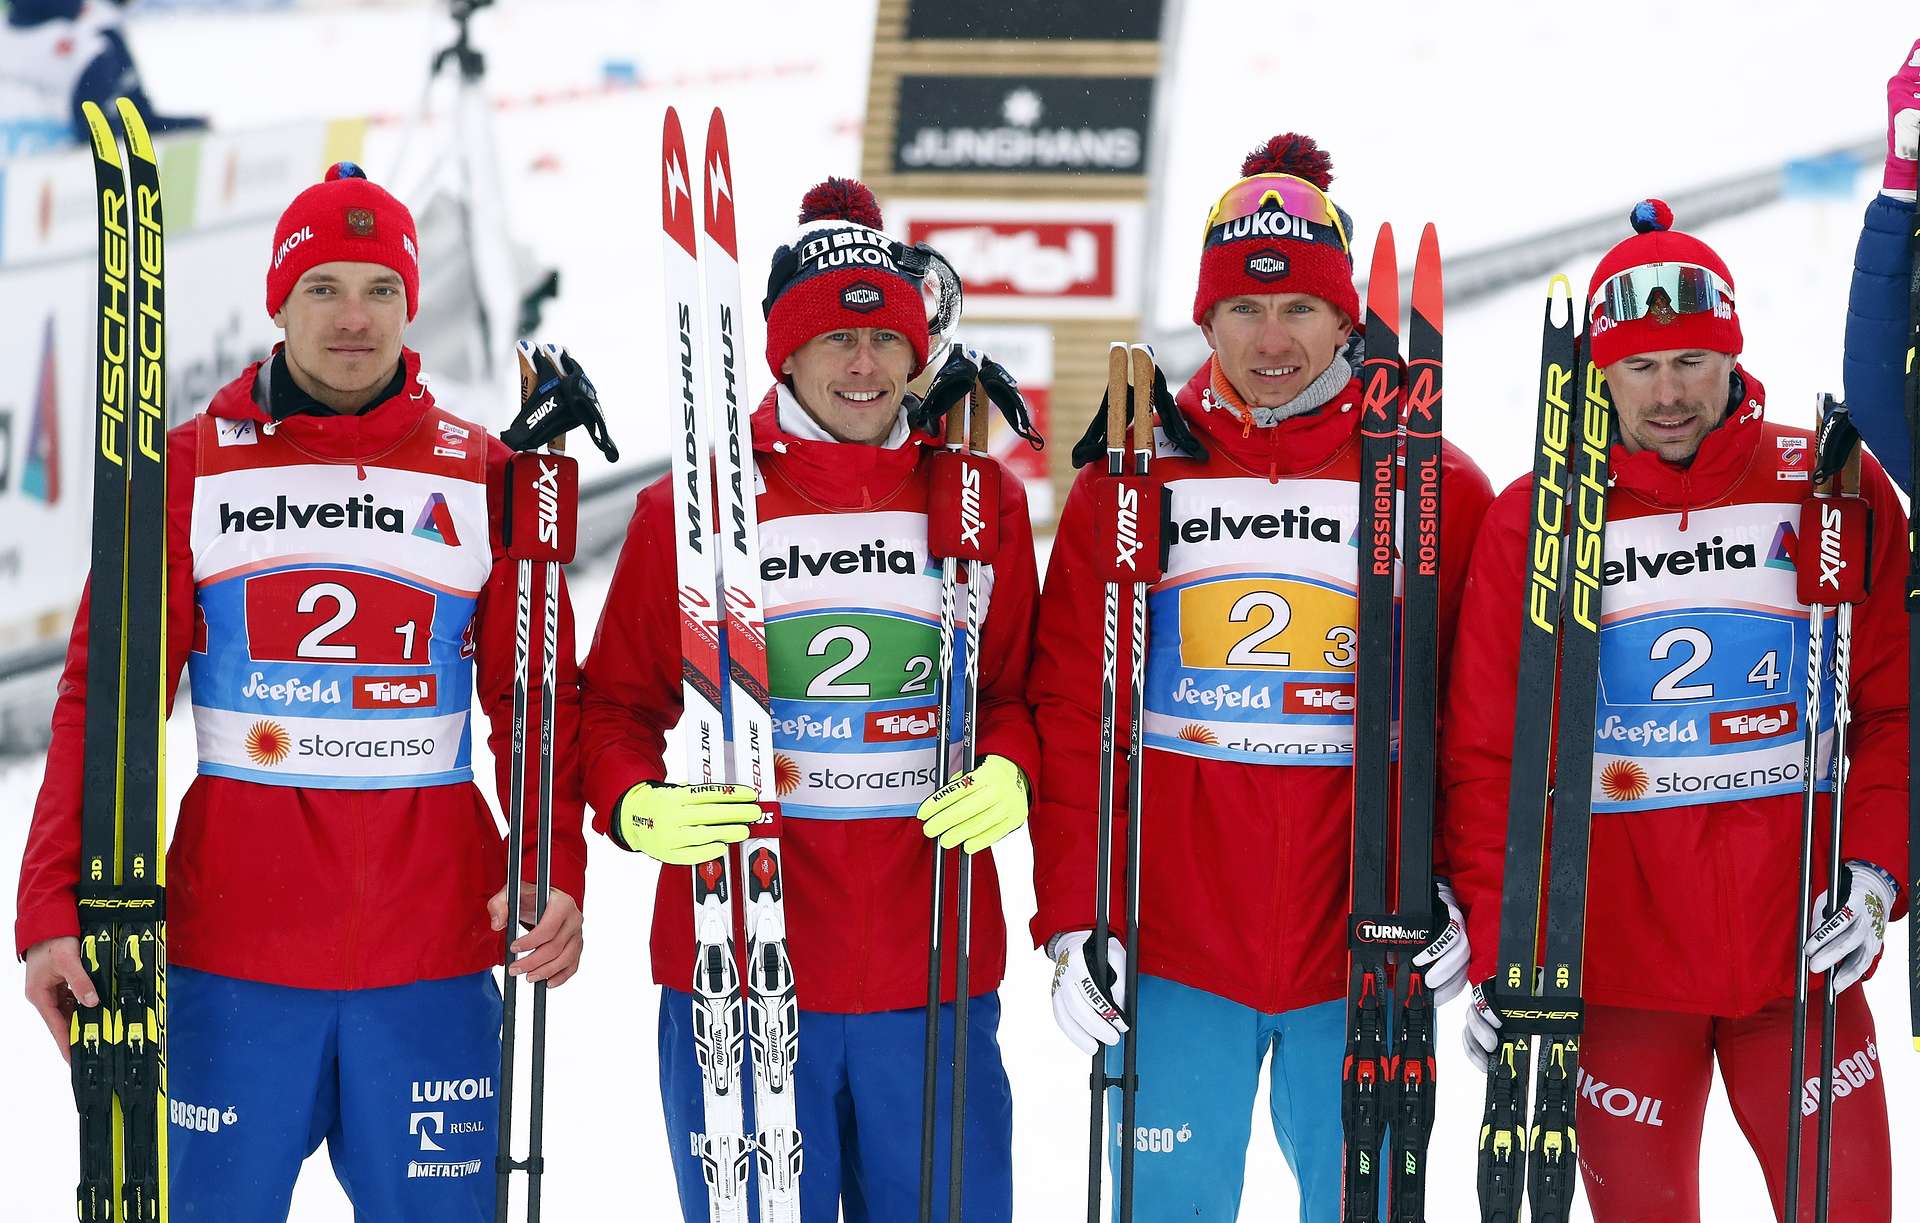 Брянский лыжник в составе сборной России занял второе место на Чемпионате мира